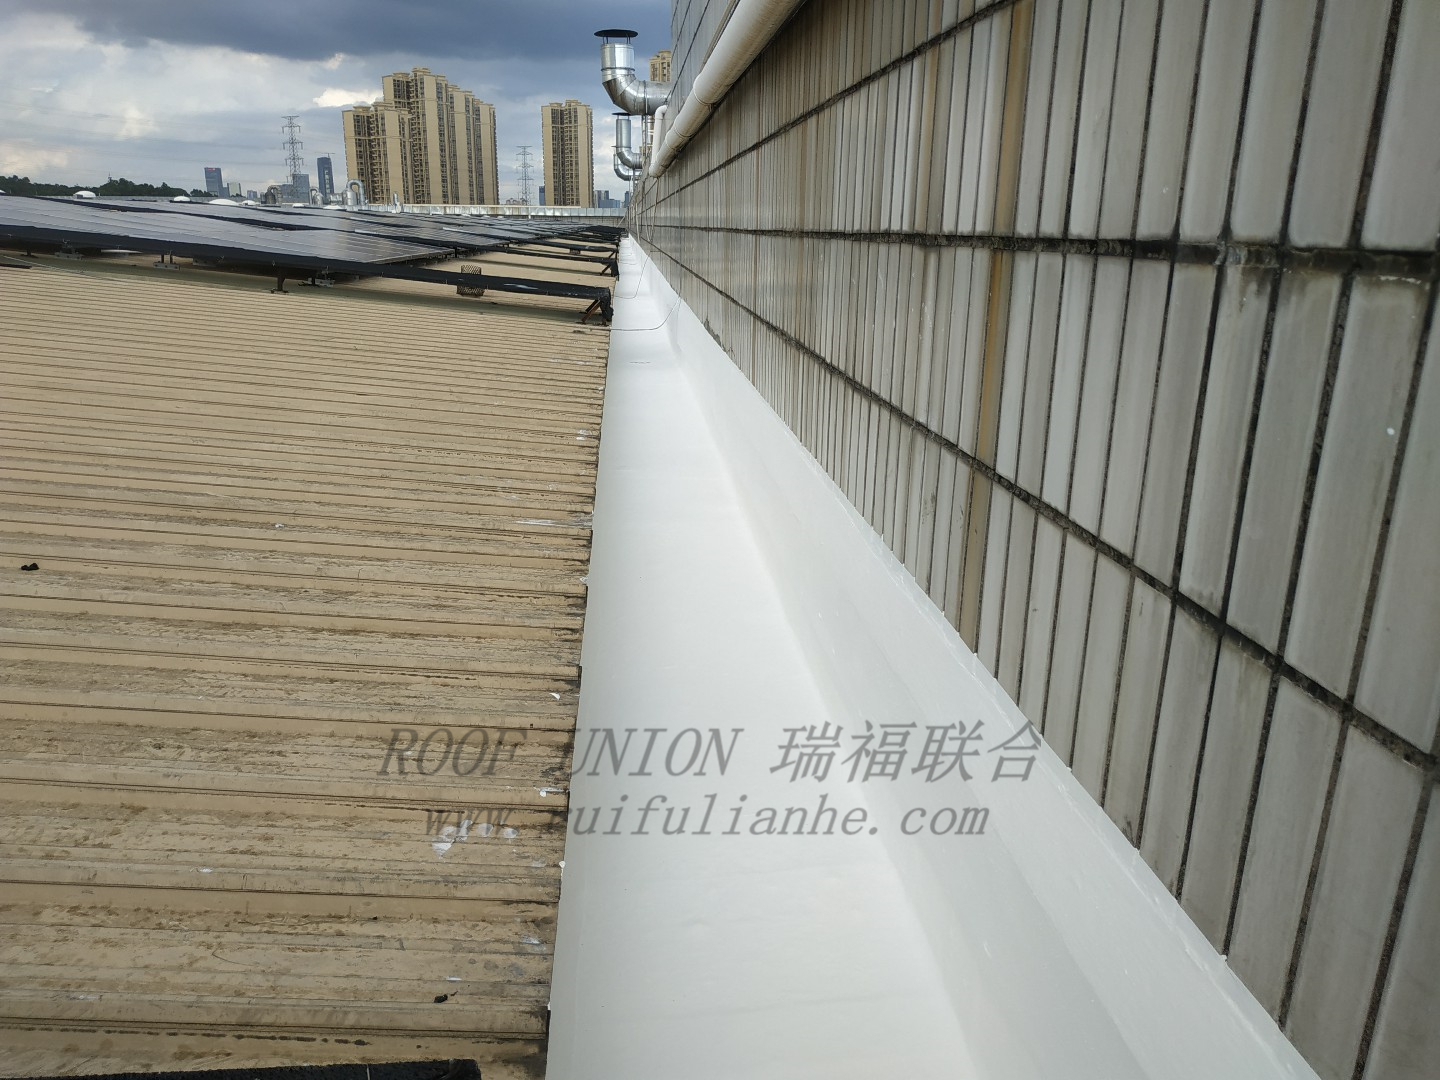  广东某大型压缩机制造企业钢结构天沟防水工程